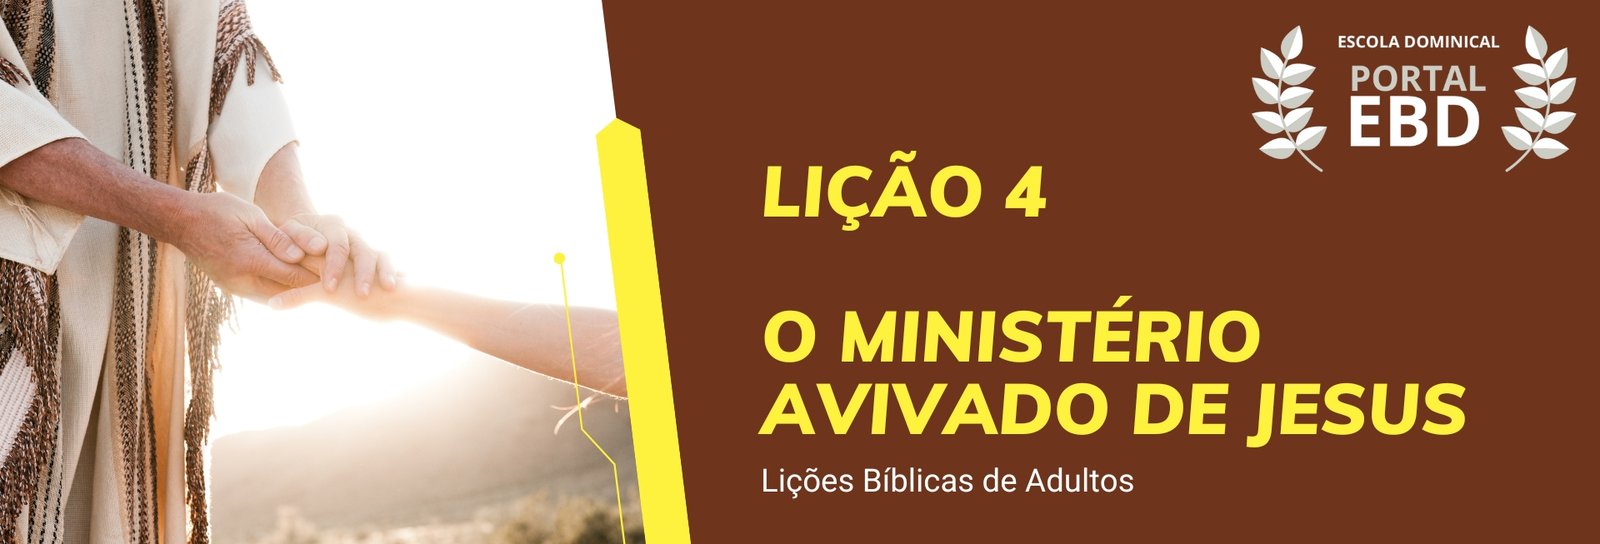 Lição 4 - O ministério avivado de Jesus I